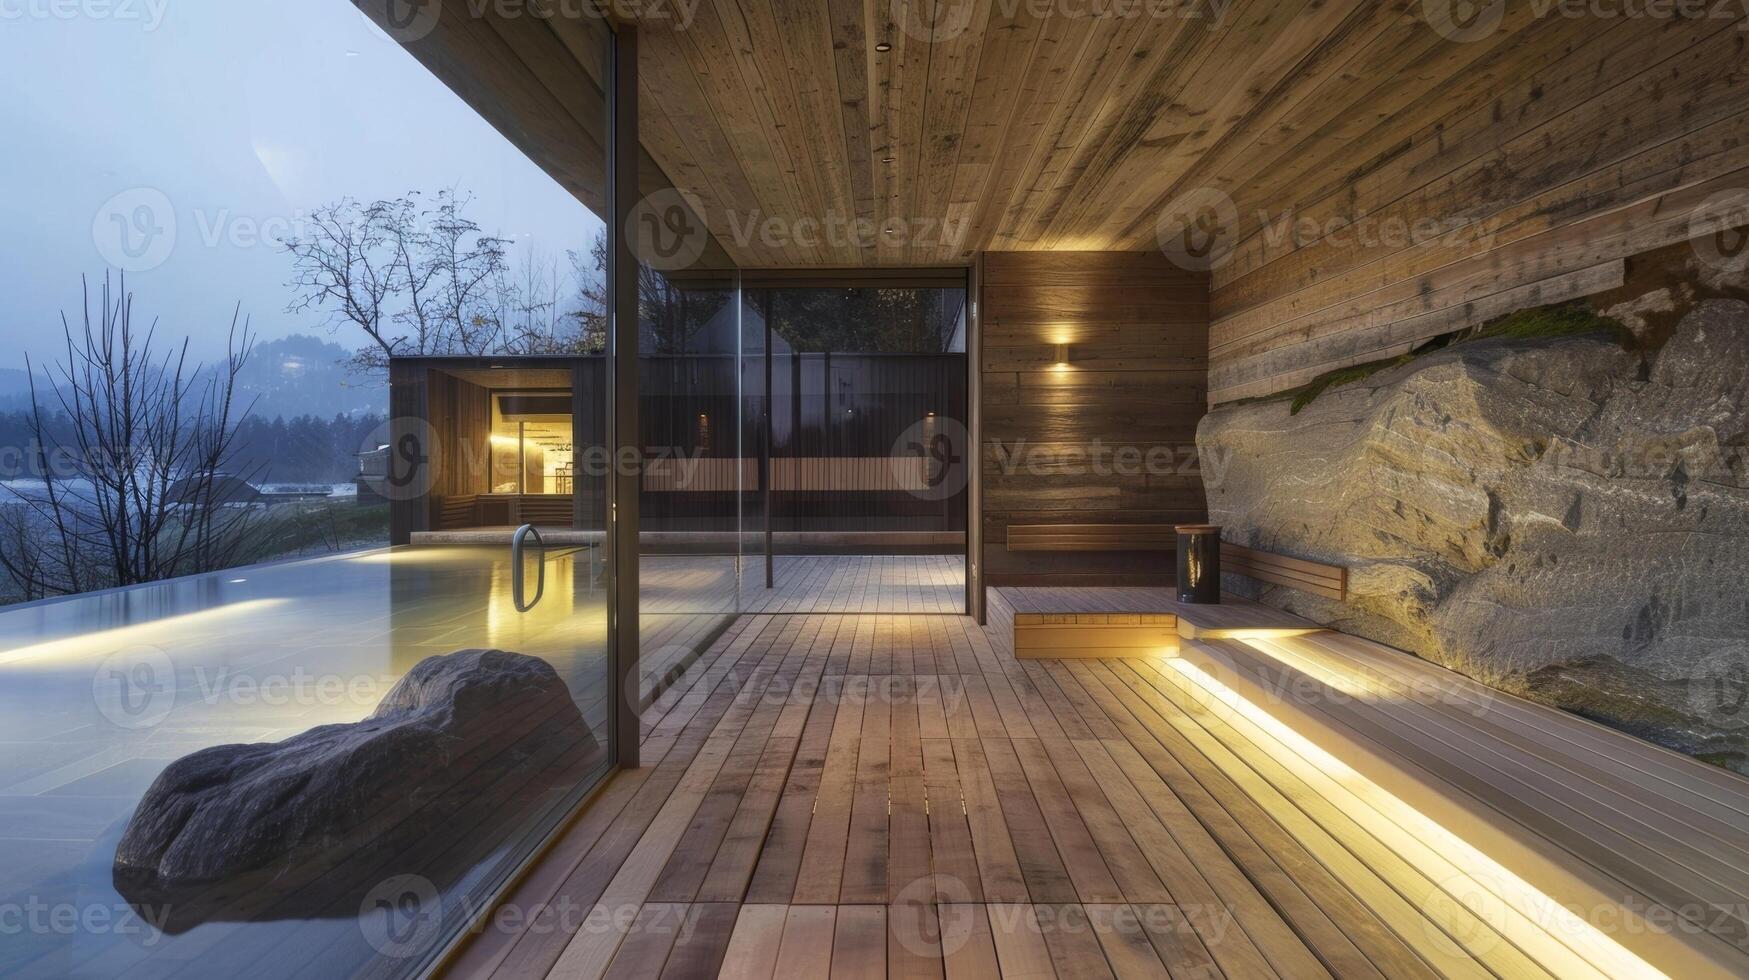 el paredes de el sauna son hecho de natural madera dando apagado un natural y terroso aroma. foto